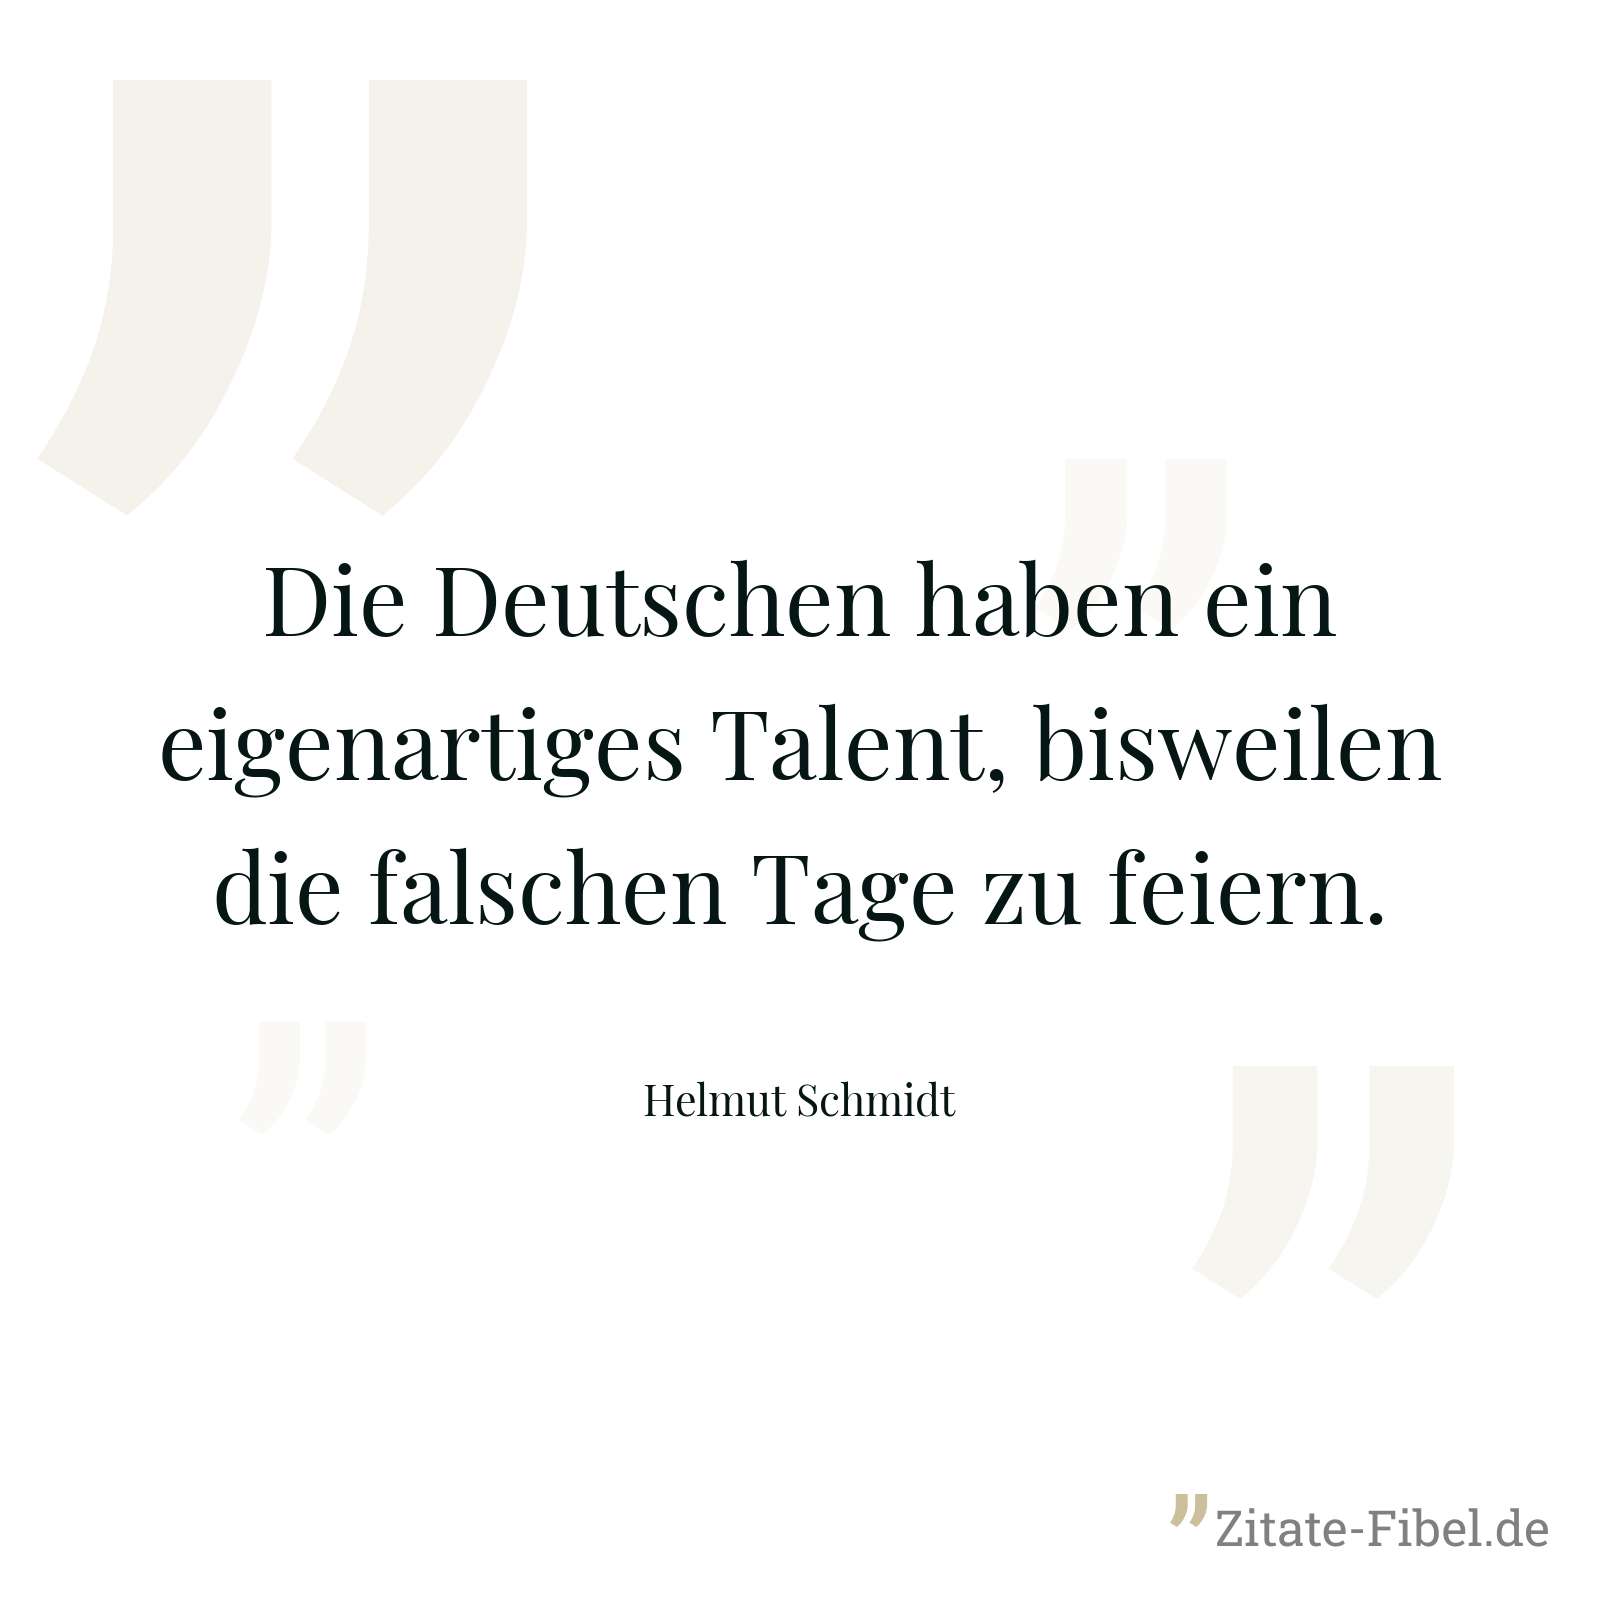 Die Deutschen haben ein eigenartiges Talent, bisweilen die falschen Tage zu feiern. - Helmut Schmidt